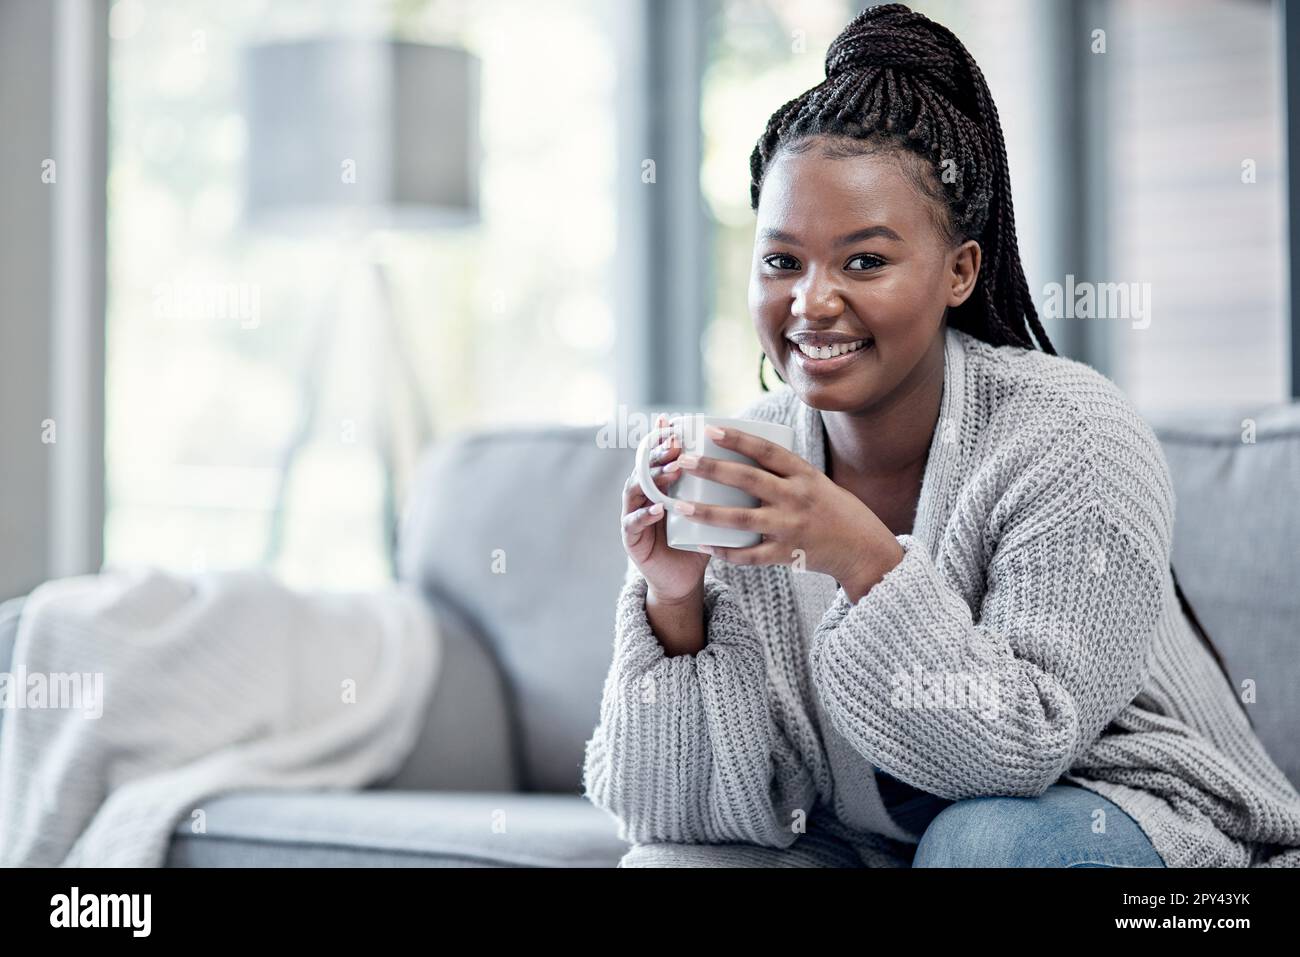 Nichts kommt dem Komfort des eigenen Zuhauses näher. Eine junge Frau, die zu Hause eine entspannende Kaffeepause auf dem Sofa macht. Stockfoto